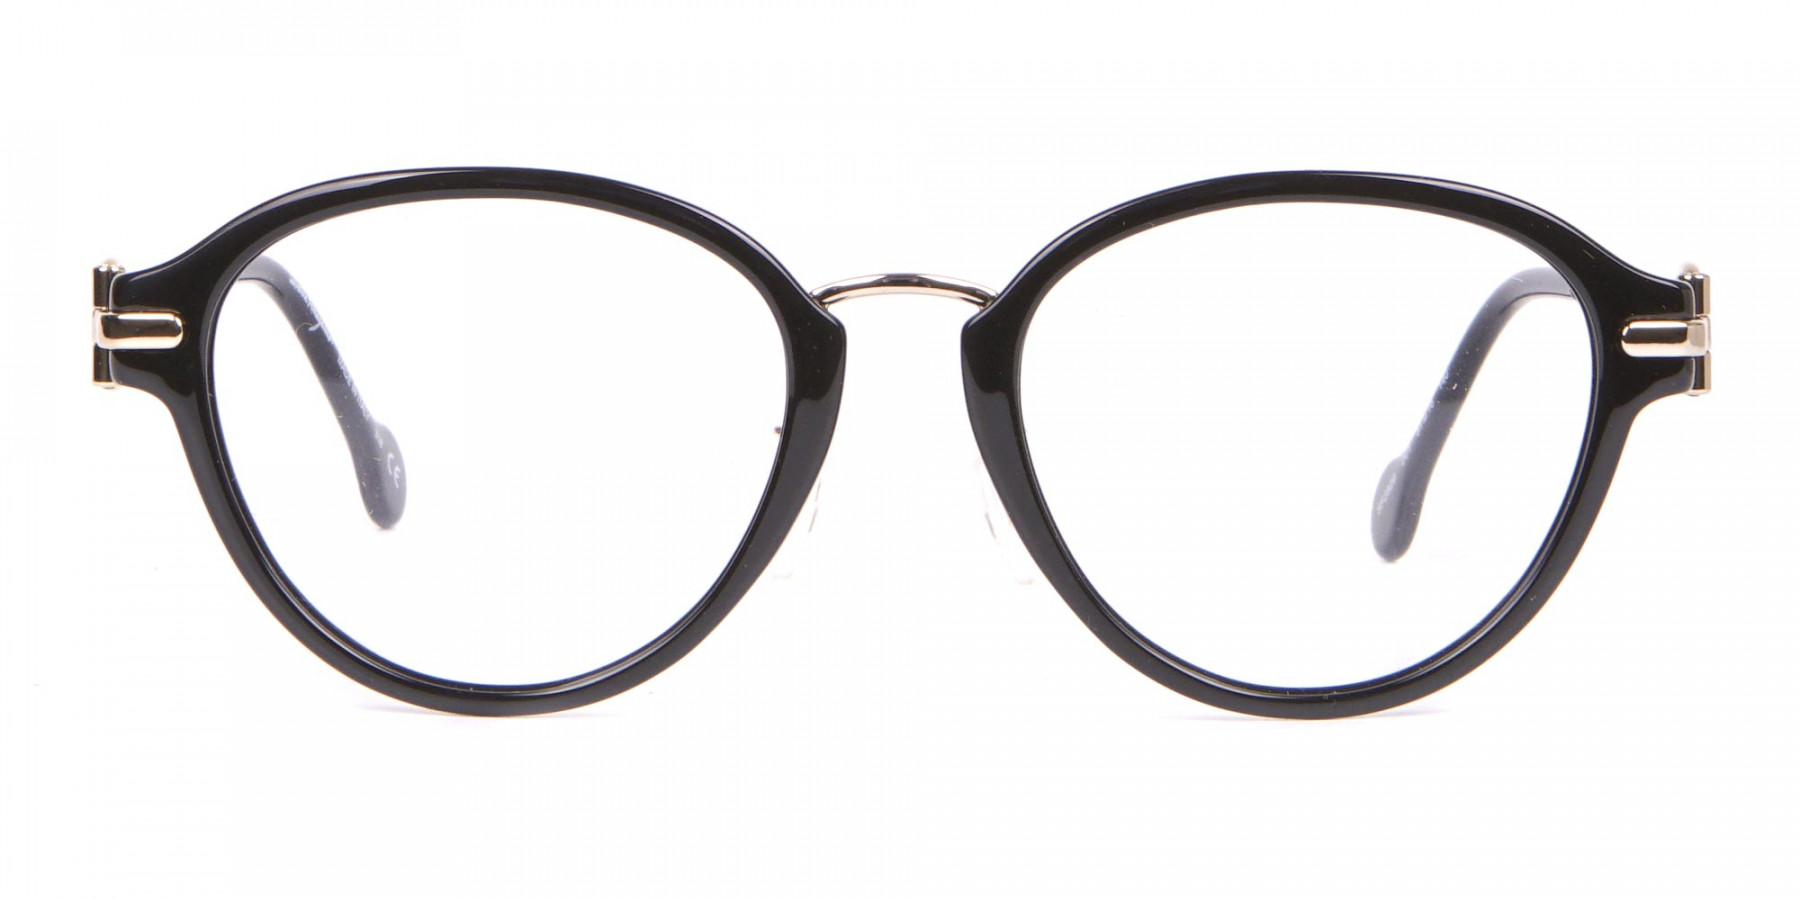 Salvatore Ferragamo SF2826 Women's Round Glasses Black-1